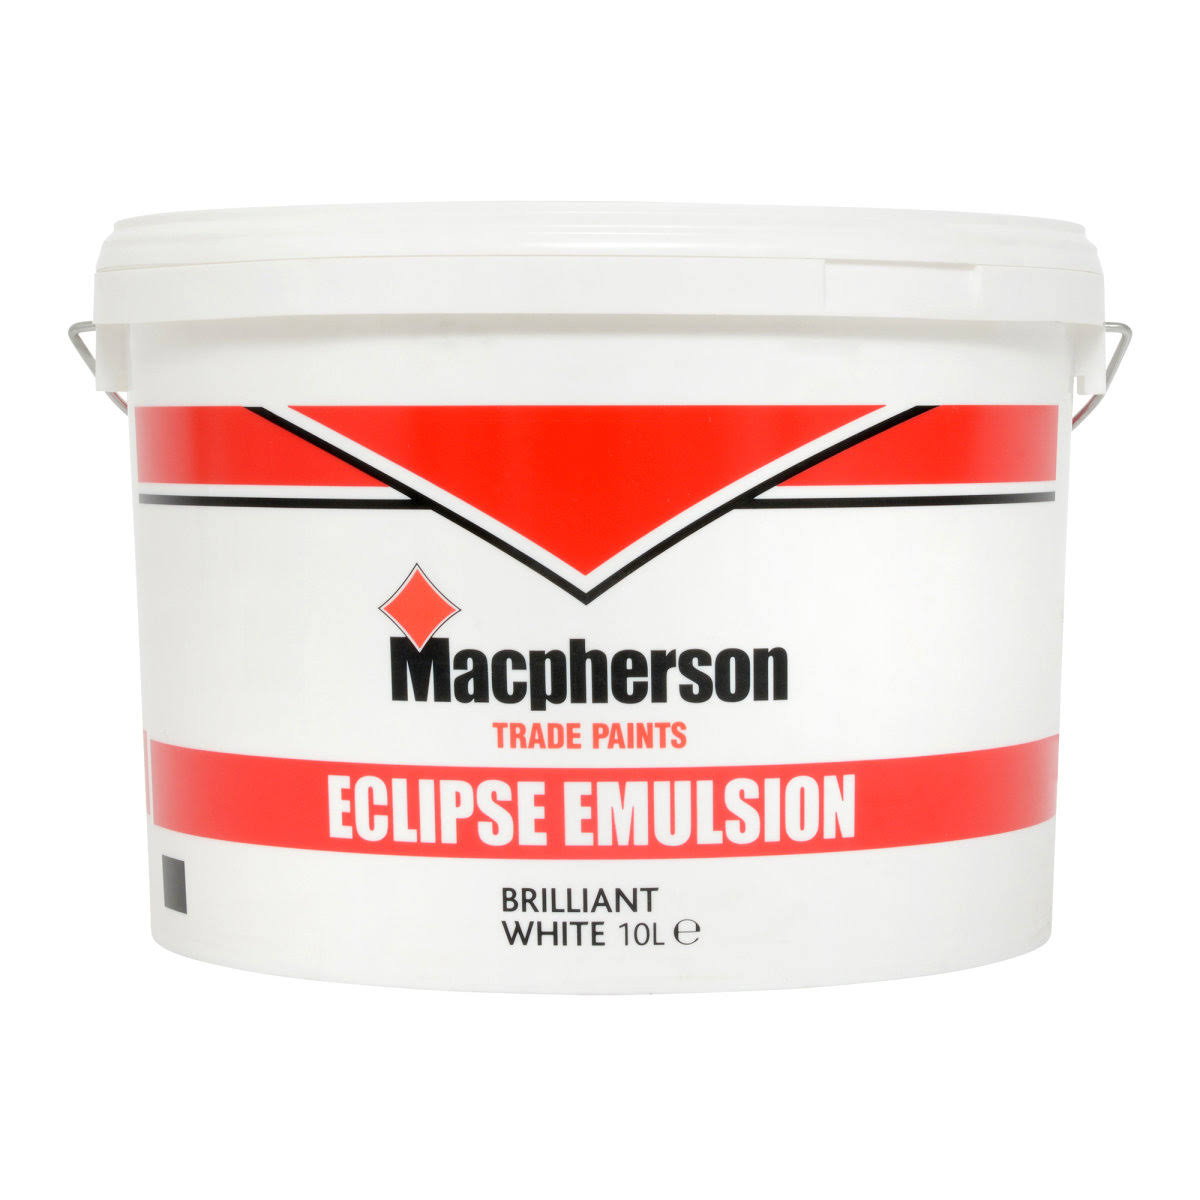 Macpherson Eclipse Emulsion Paint - Brilliant White